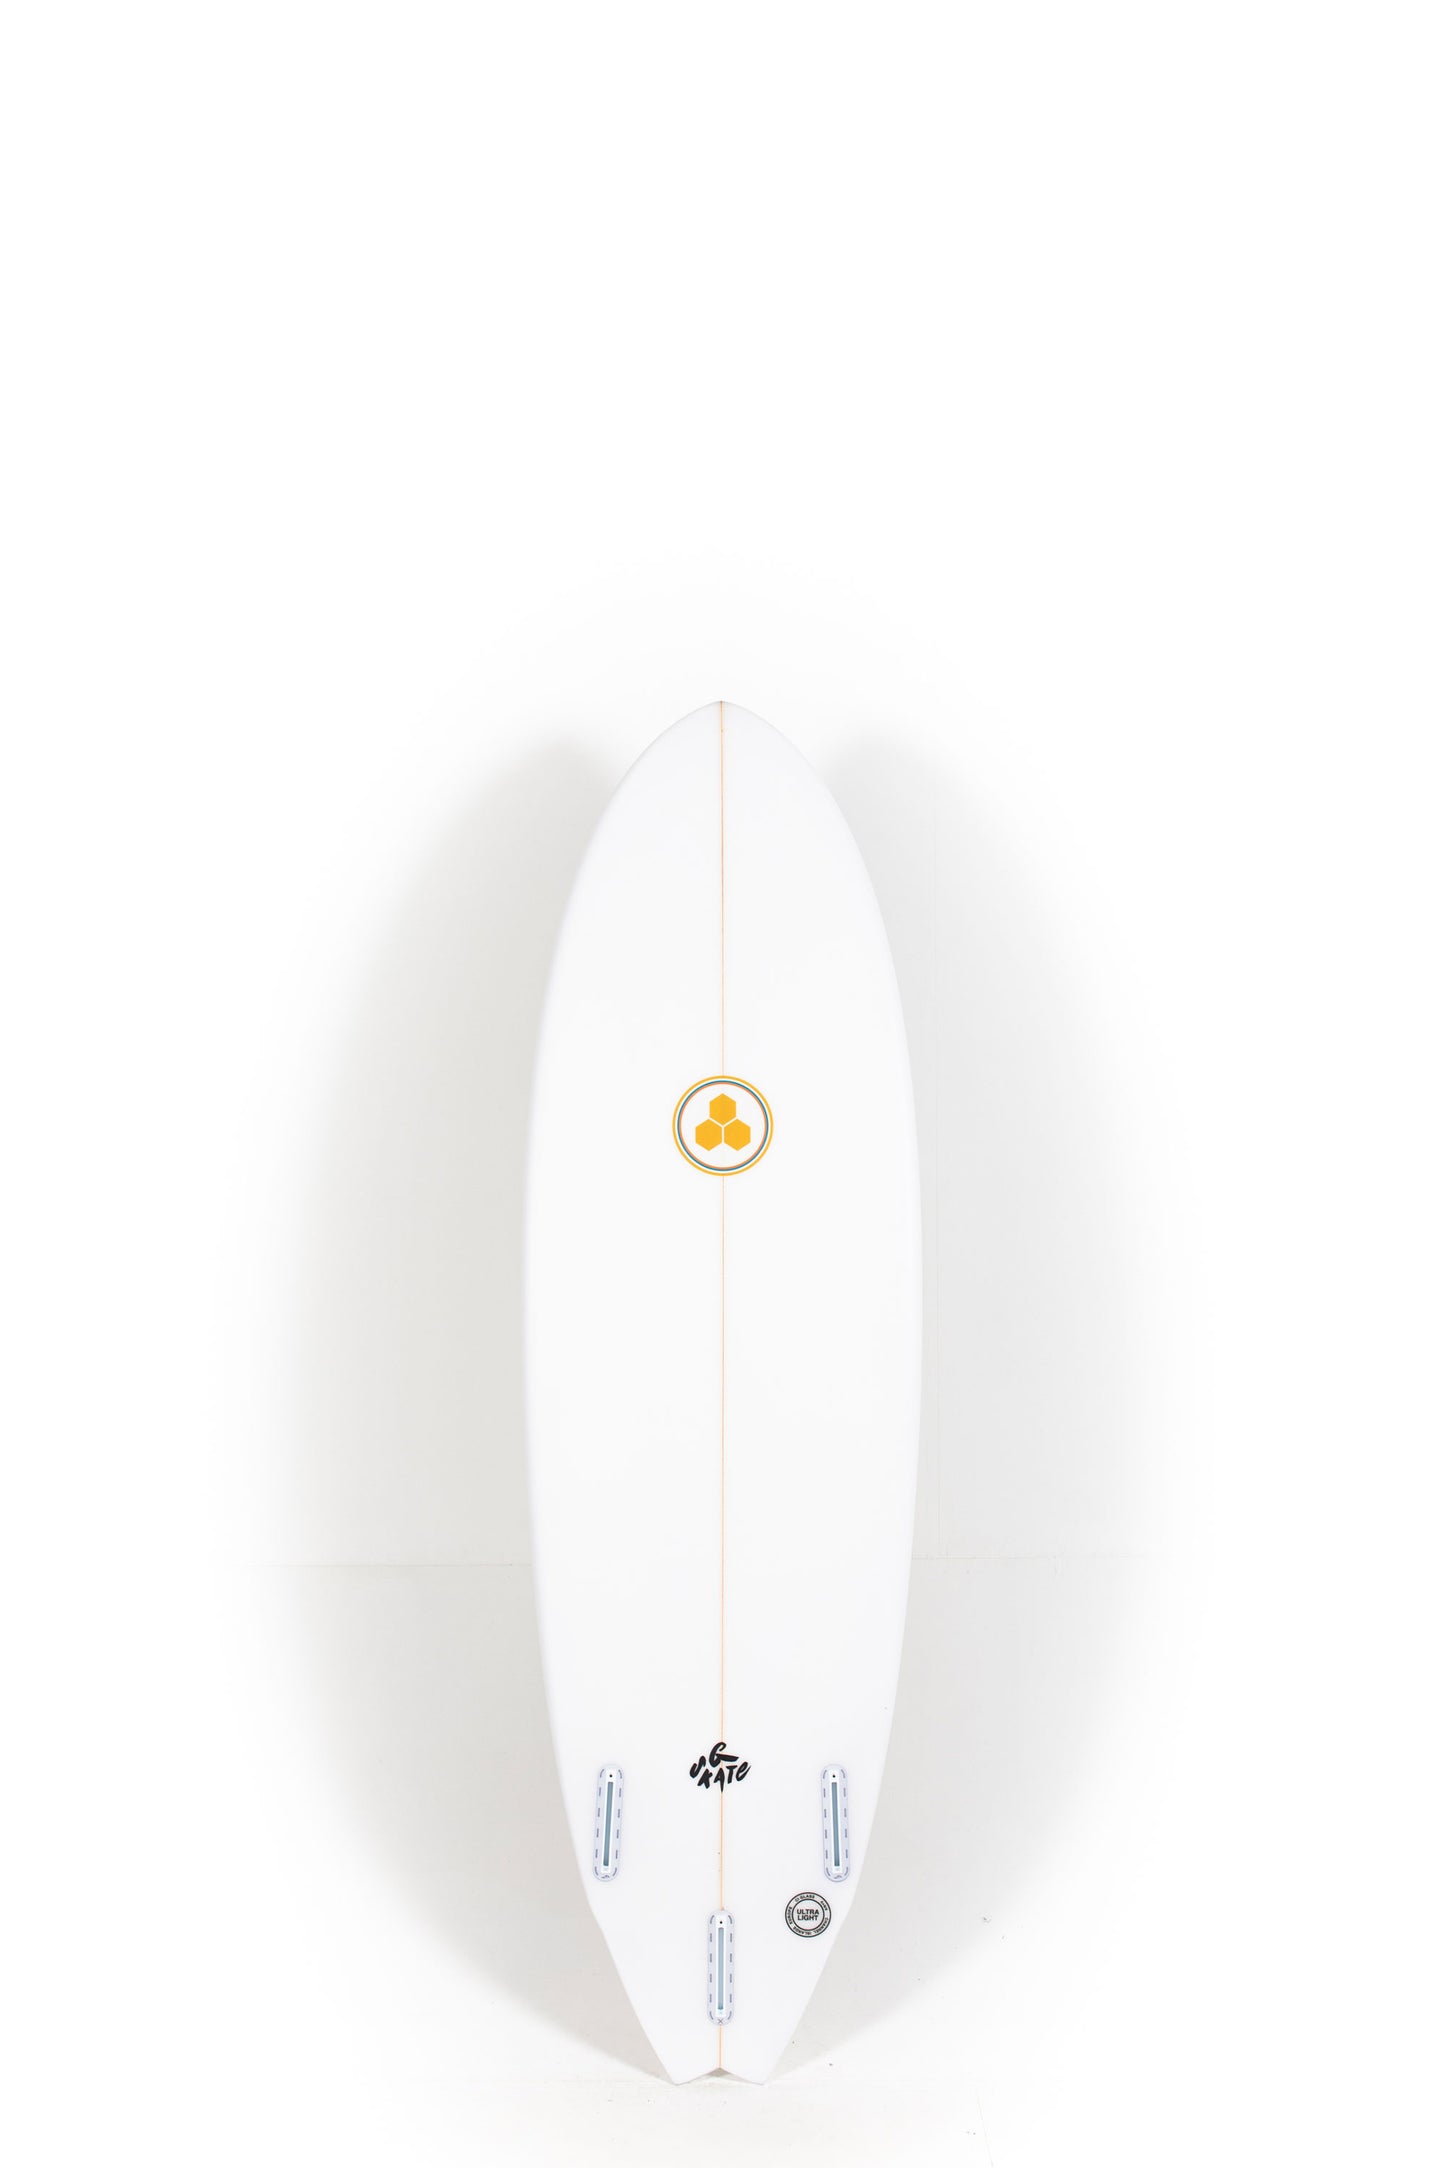 Pukas Surf Shop - Channel Islands - G-Skate by Al Merrick - 5'10" x 20 x 2 5/8 - 34.5L - CI26701